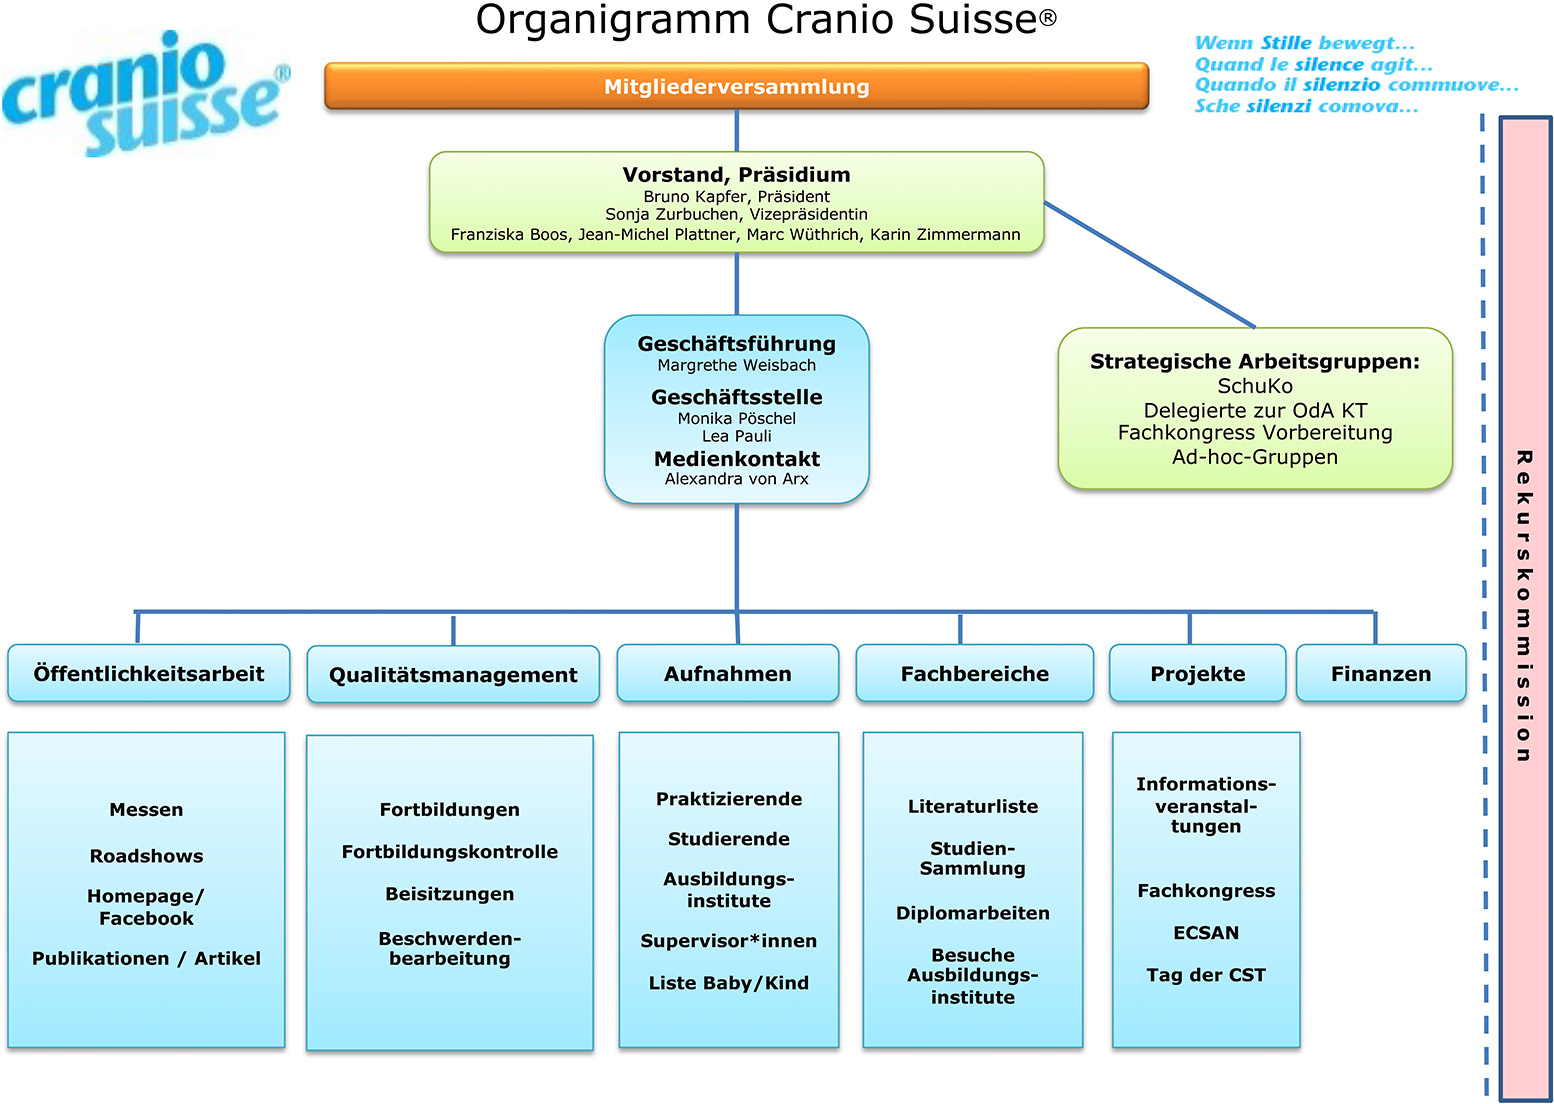 Organigramm-Cranio-Suisse-2021-07-02-DE.jpg